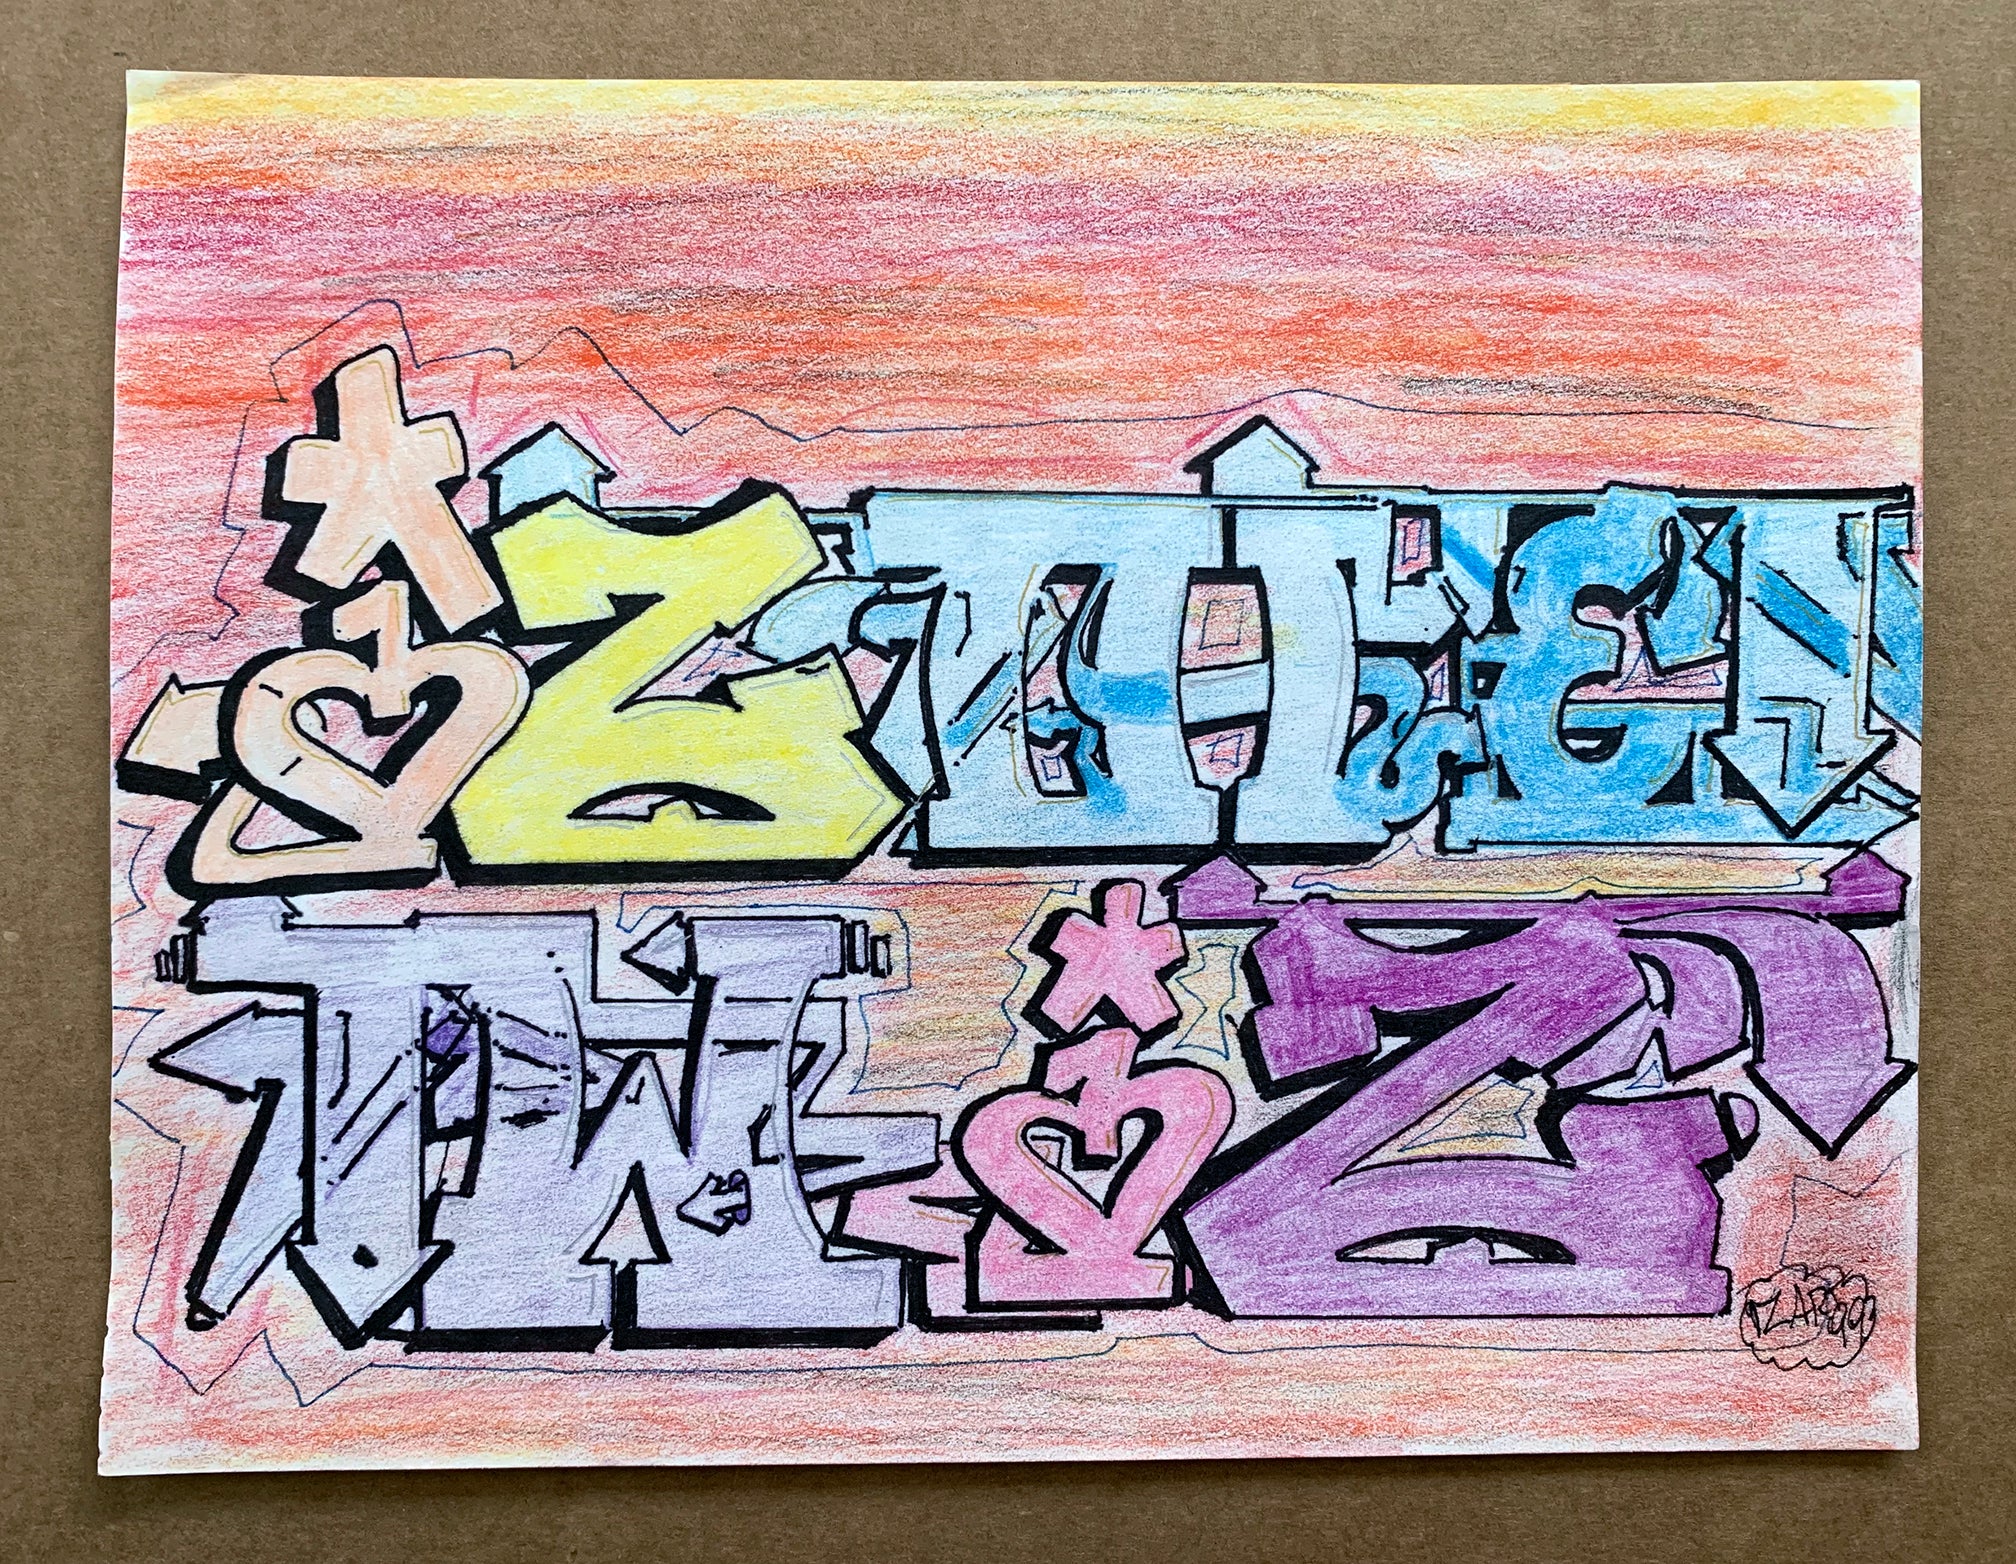 IZ THE WIZ - " IZ THE WIZ" Drawing